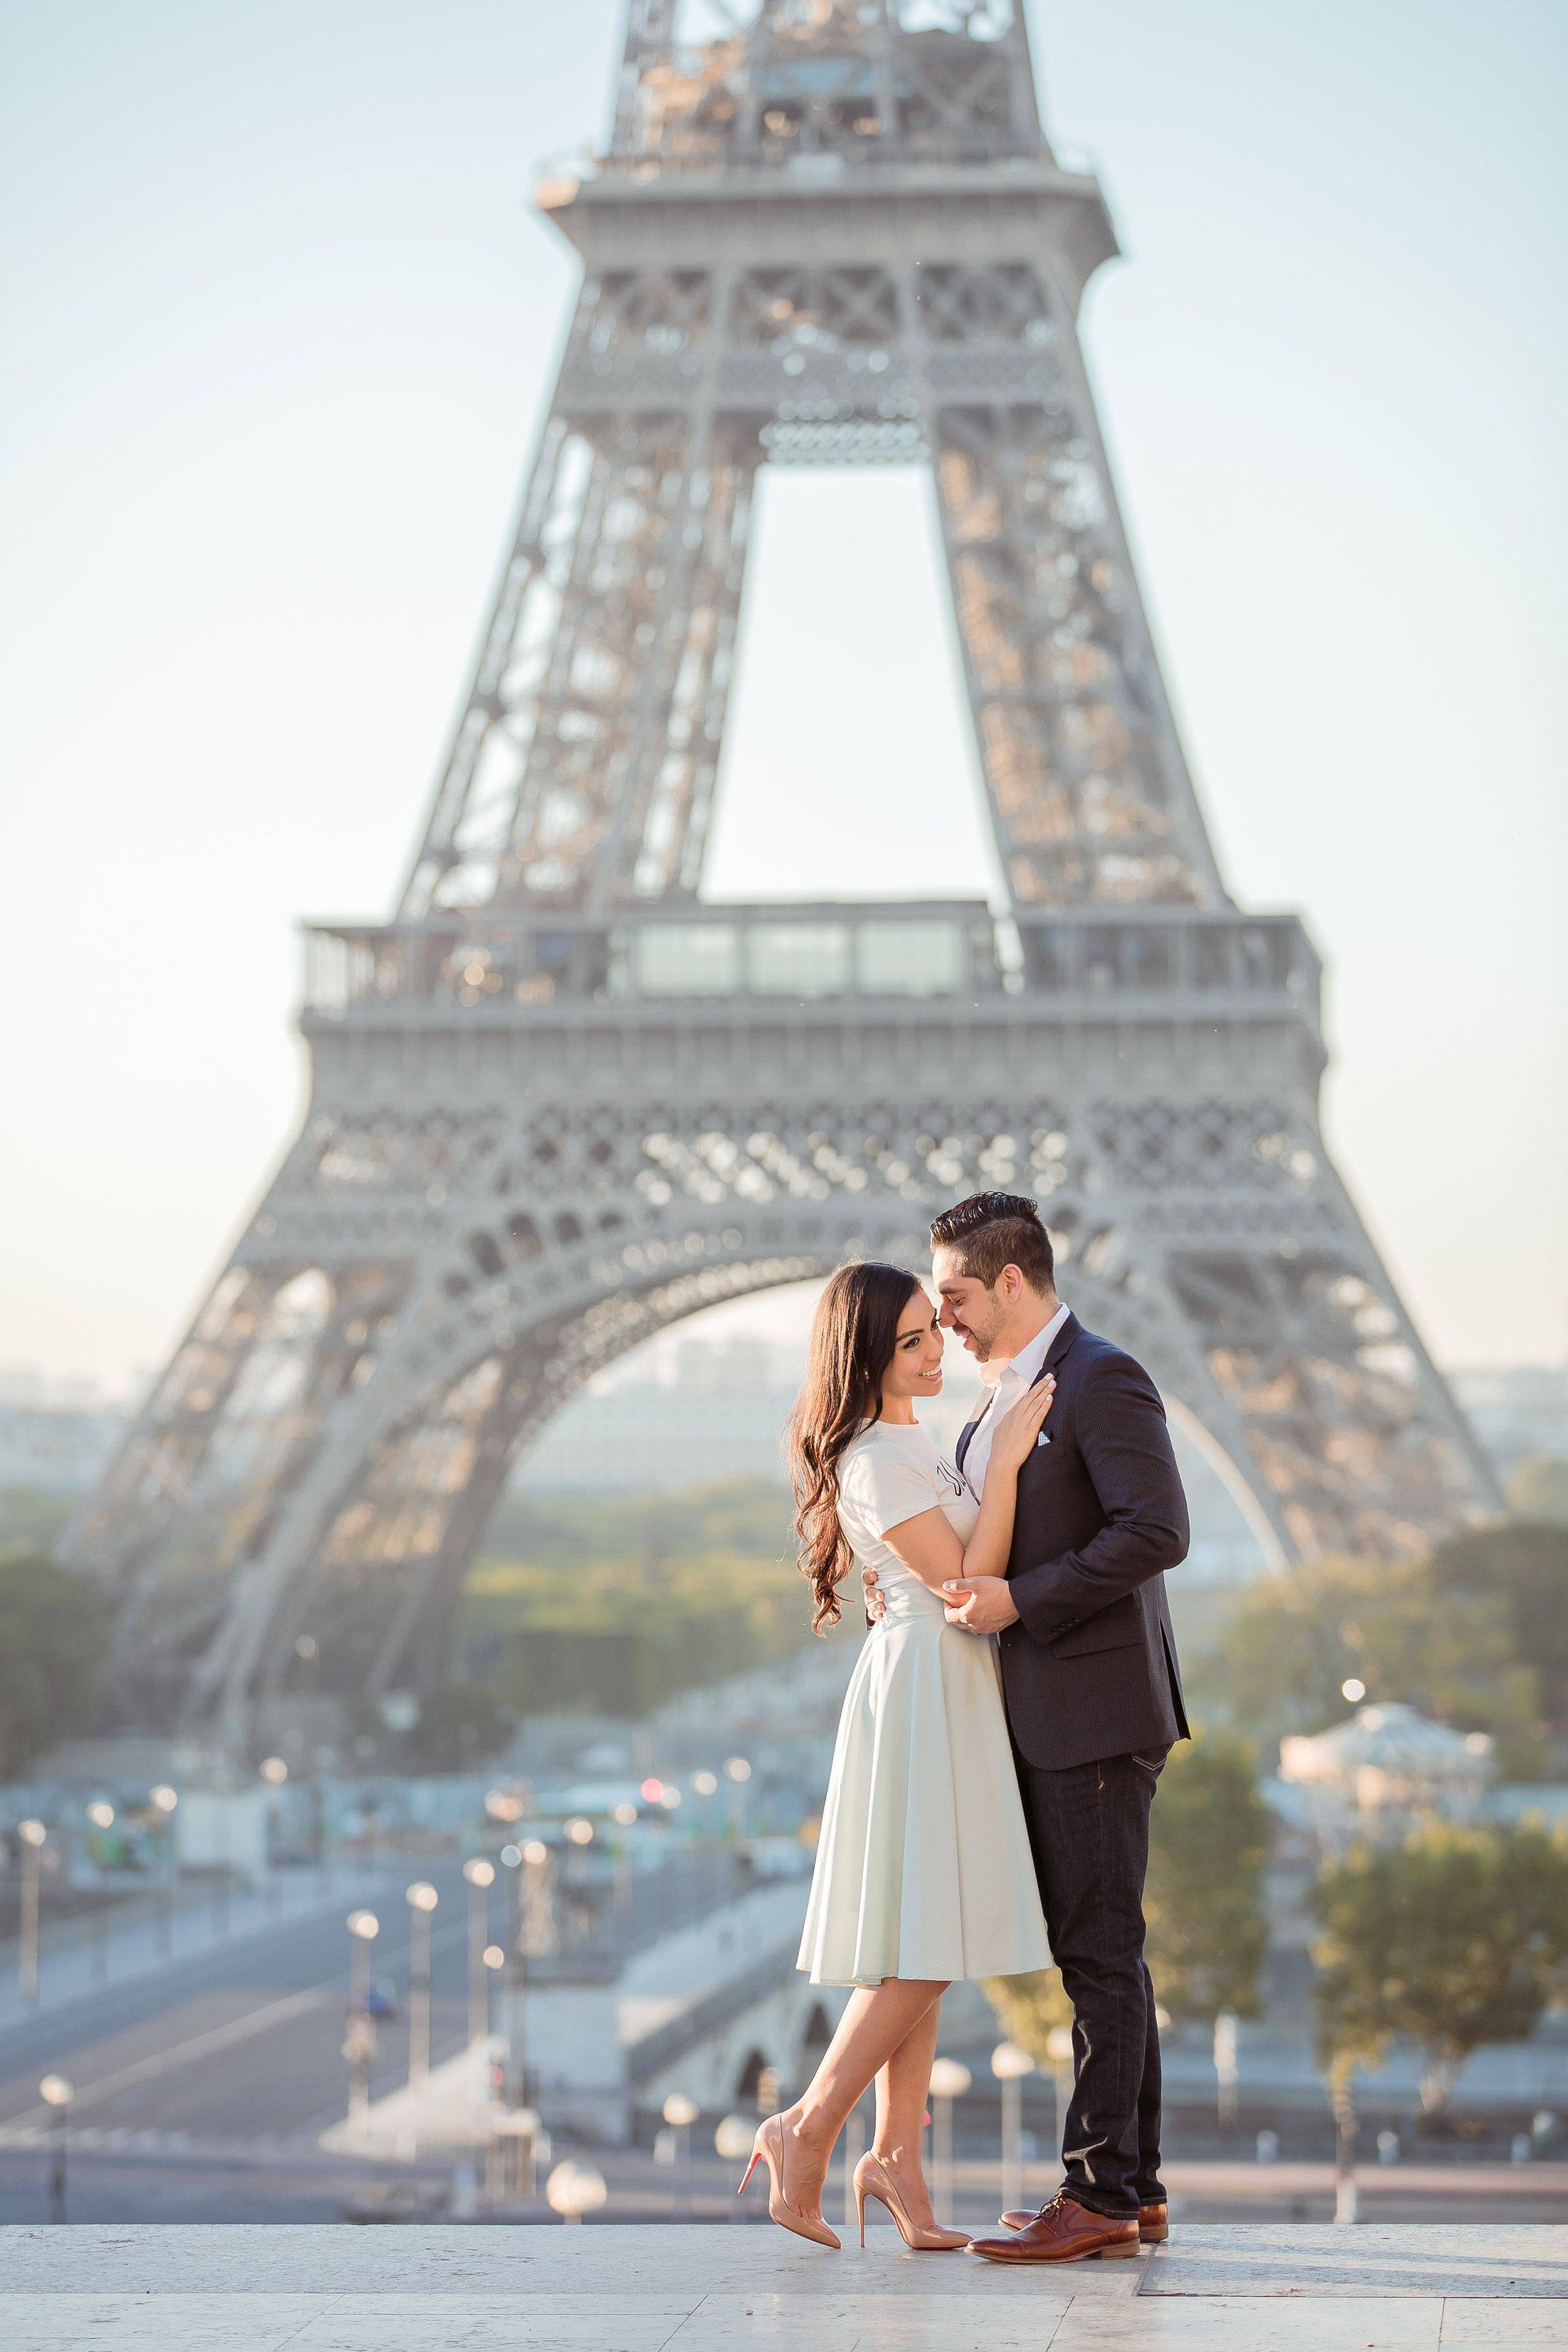 Свадьба во франции: самый романтичный день в удивительной стране